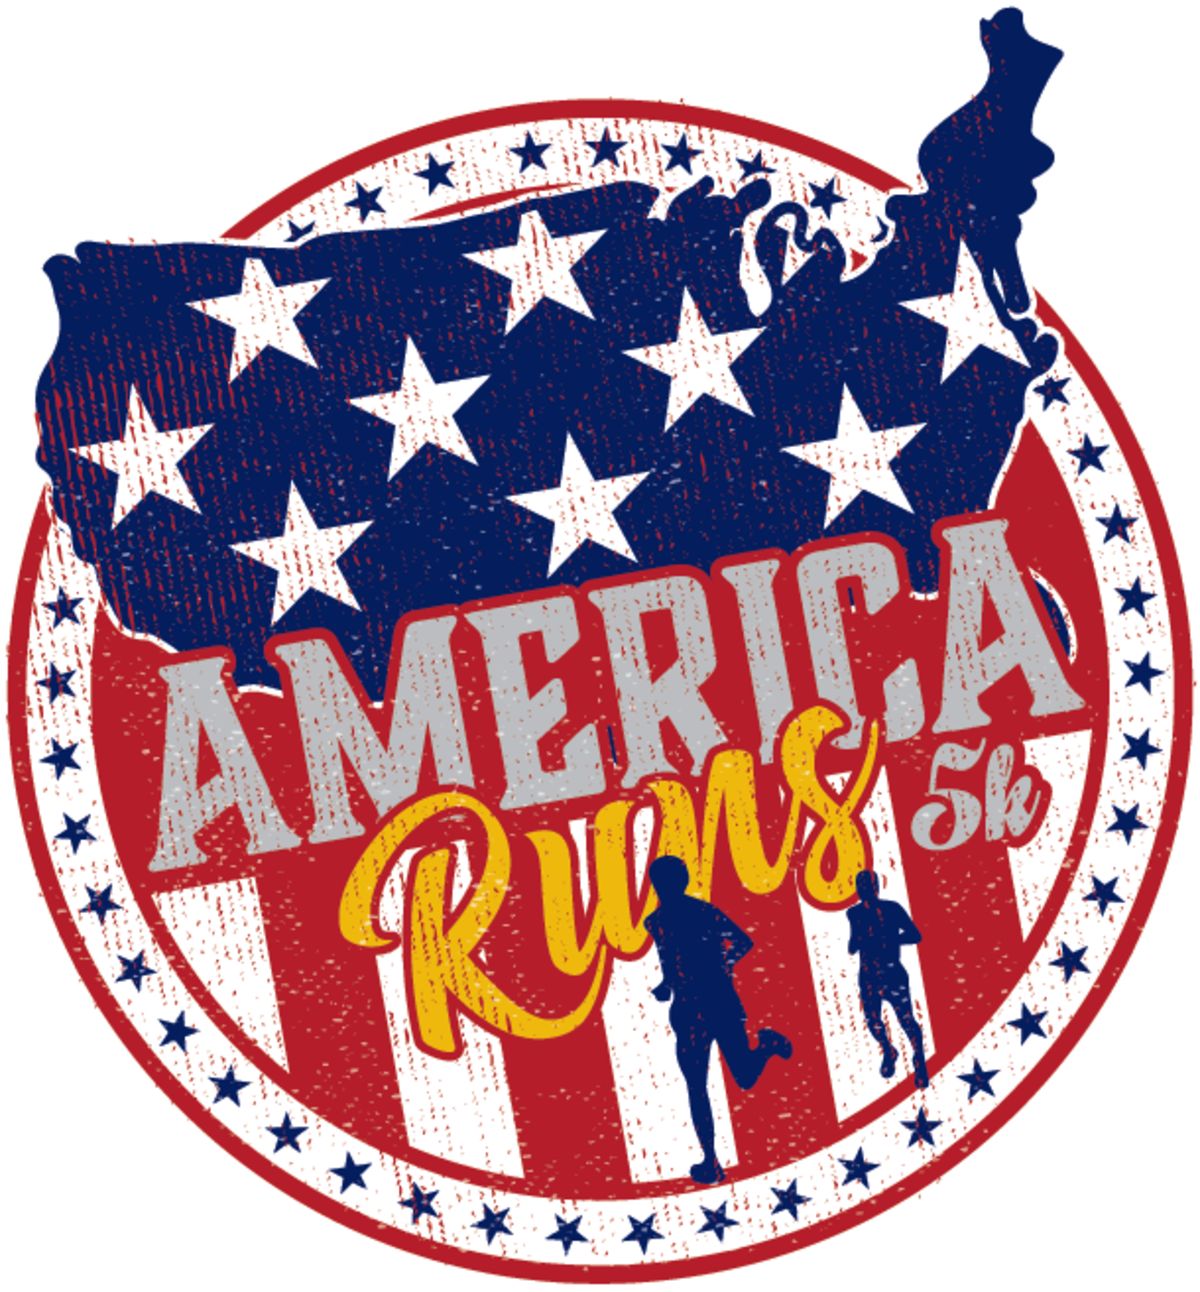 Runnerd Girl America Runs 5k And I Plan To Run Too